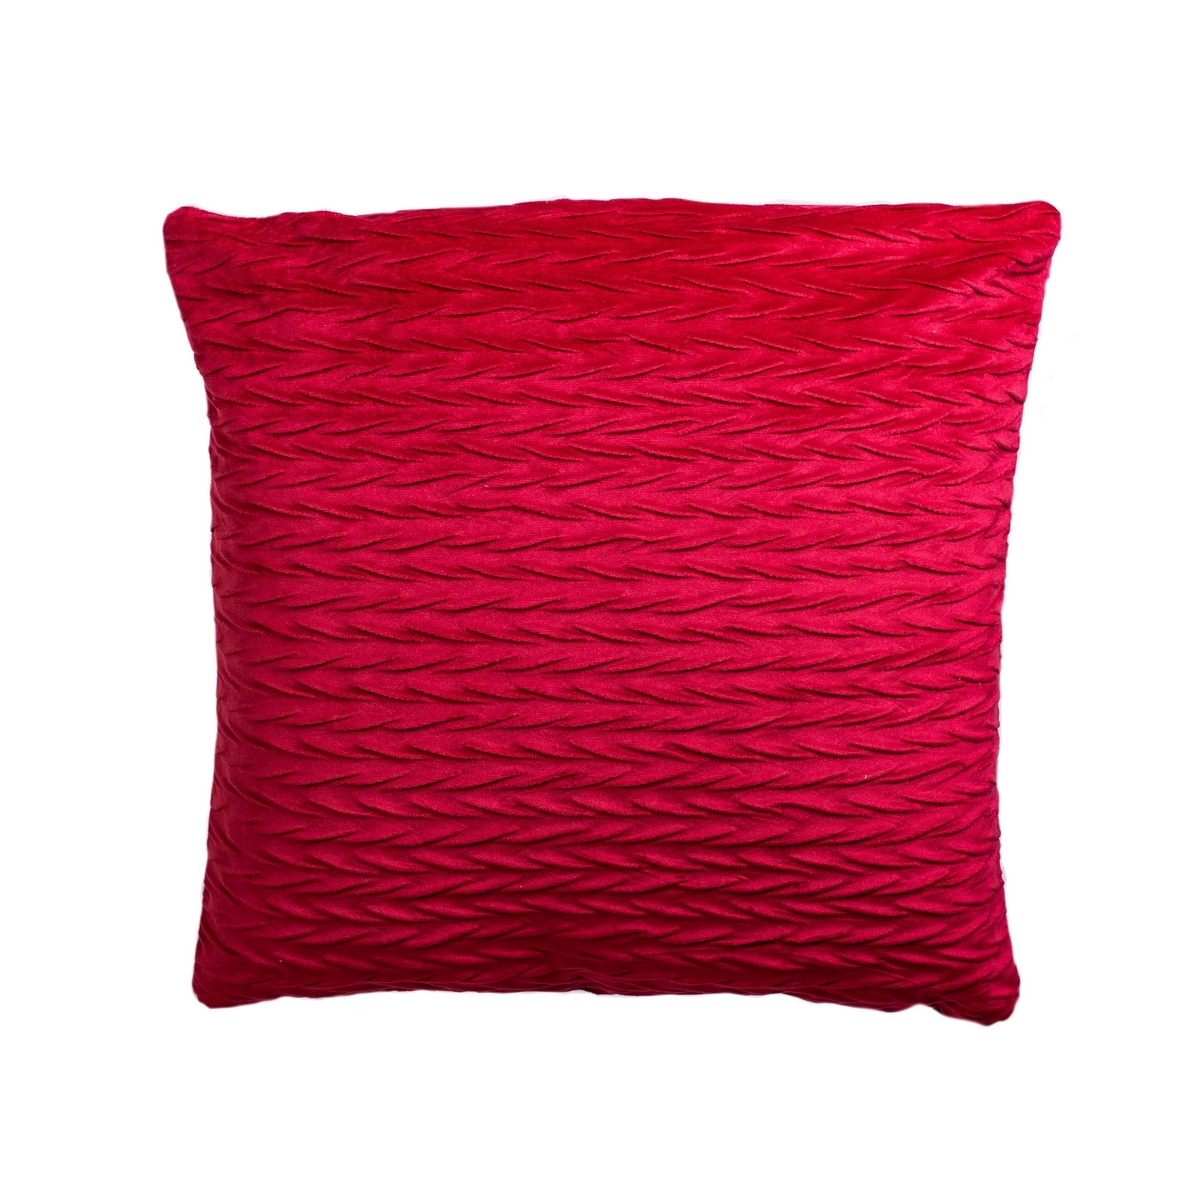 Jahu Povlak na polštářek Mia červená, 40 x 40 cm